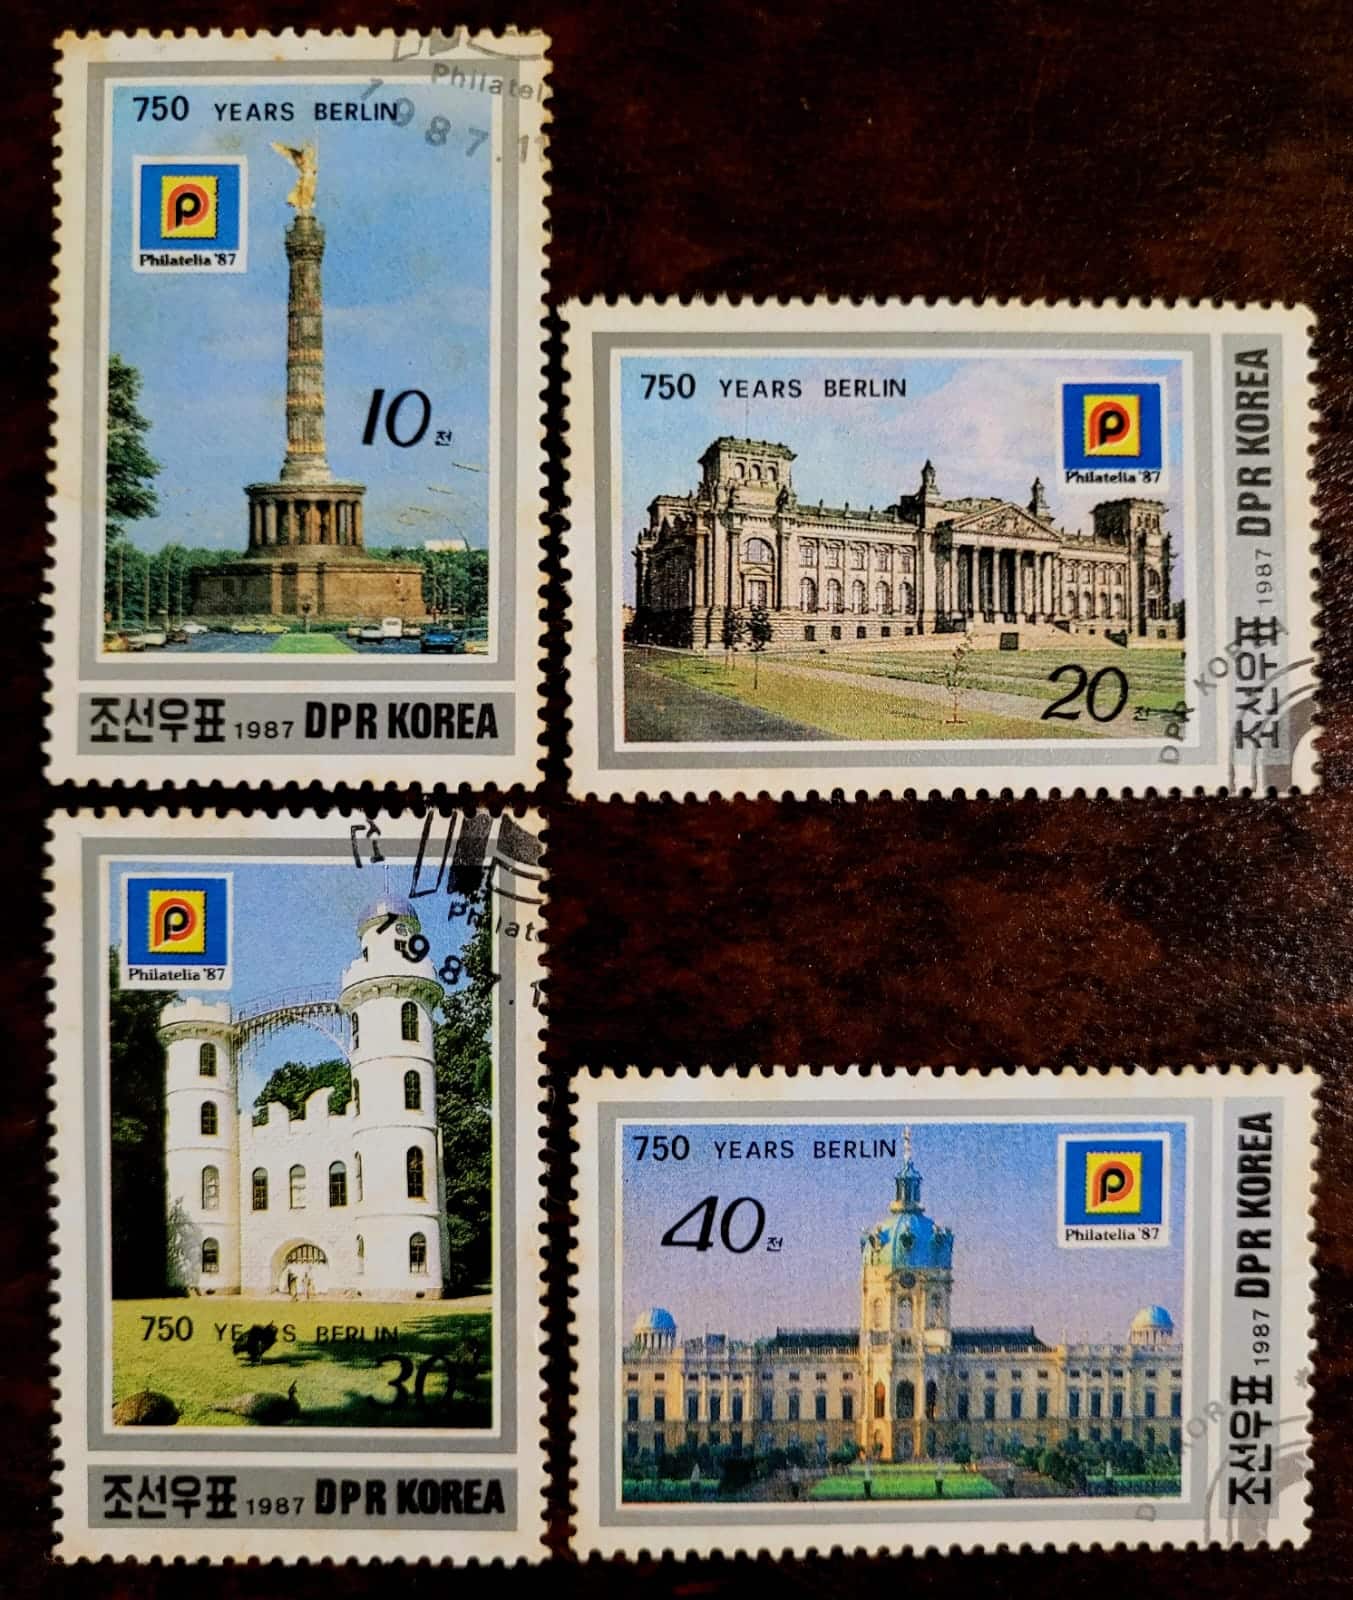 Selos Coreia do Norte 750o Aniversario de Berlim e Exposicao Internacional de Selos Philatelia 87 Colonia Alemanha 1 Casa do Colecionador